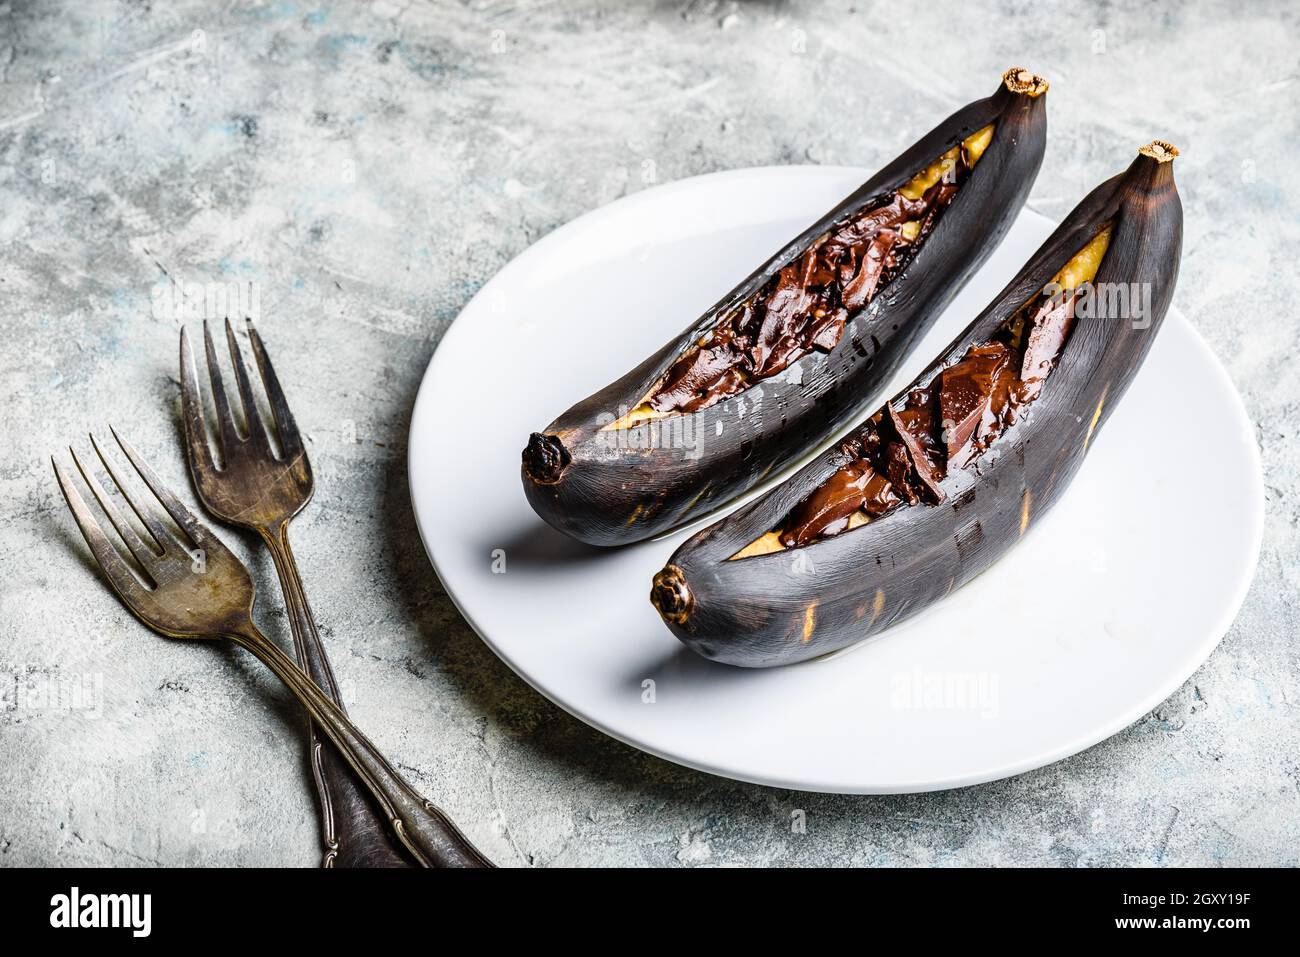 Banane grigliate con cioccolato fondente e succo di agrumi Foto Stock